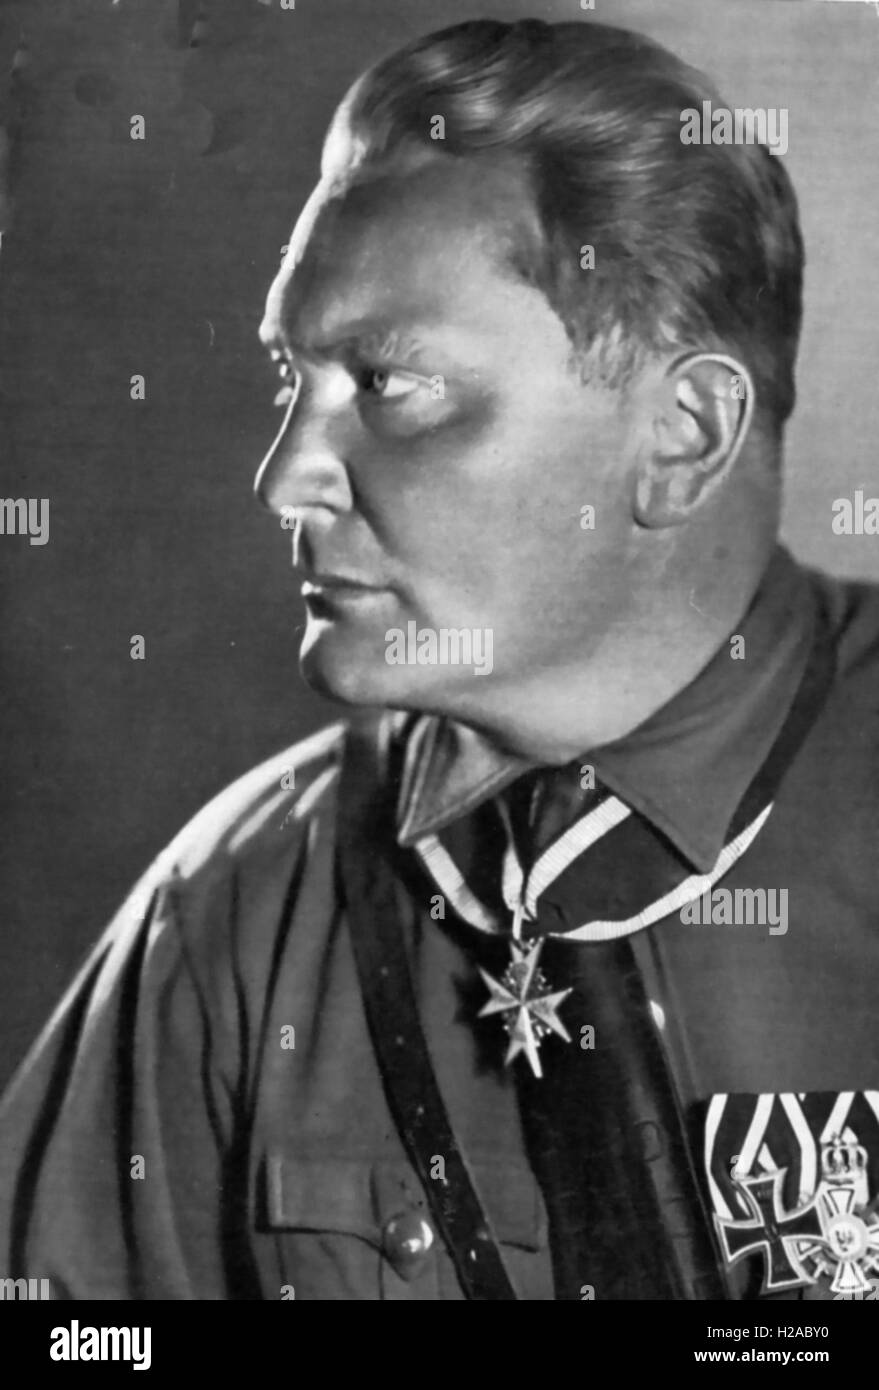 HERMANN GOERING (1893-1946) WWI deutsche Jagdflieger und NS-militärischer Führer im Jahr 1932. Er trägt die Pour le Merite-Medaille um den Hals Stockfoto